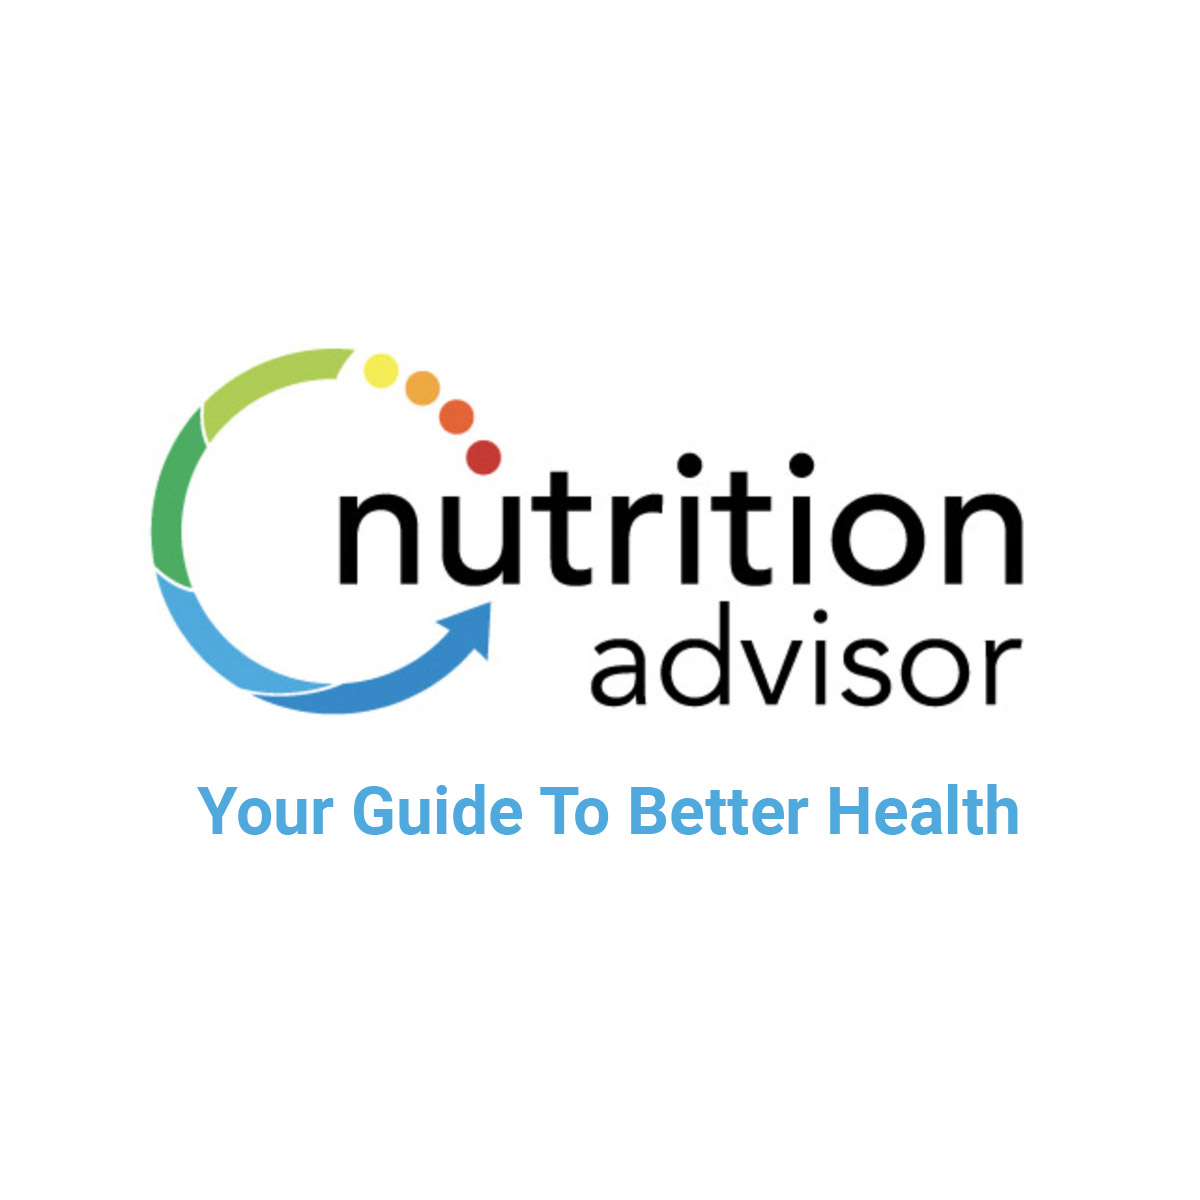 (c) Nutritionadvisor.com